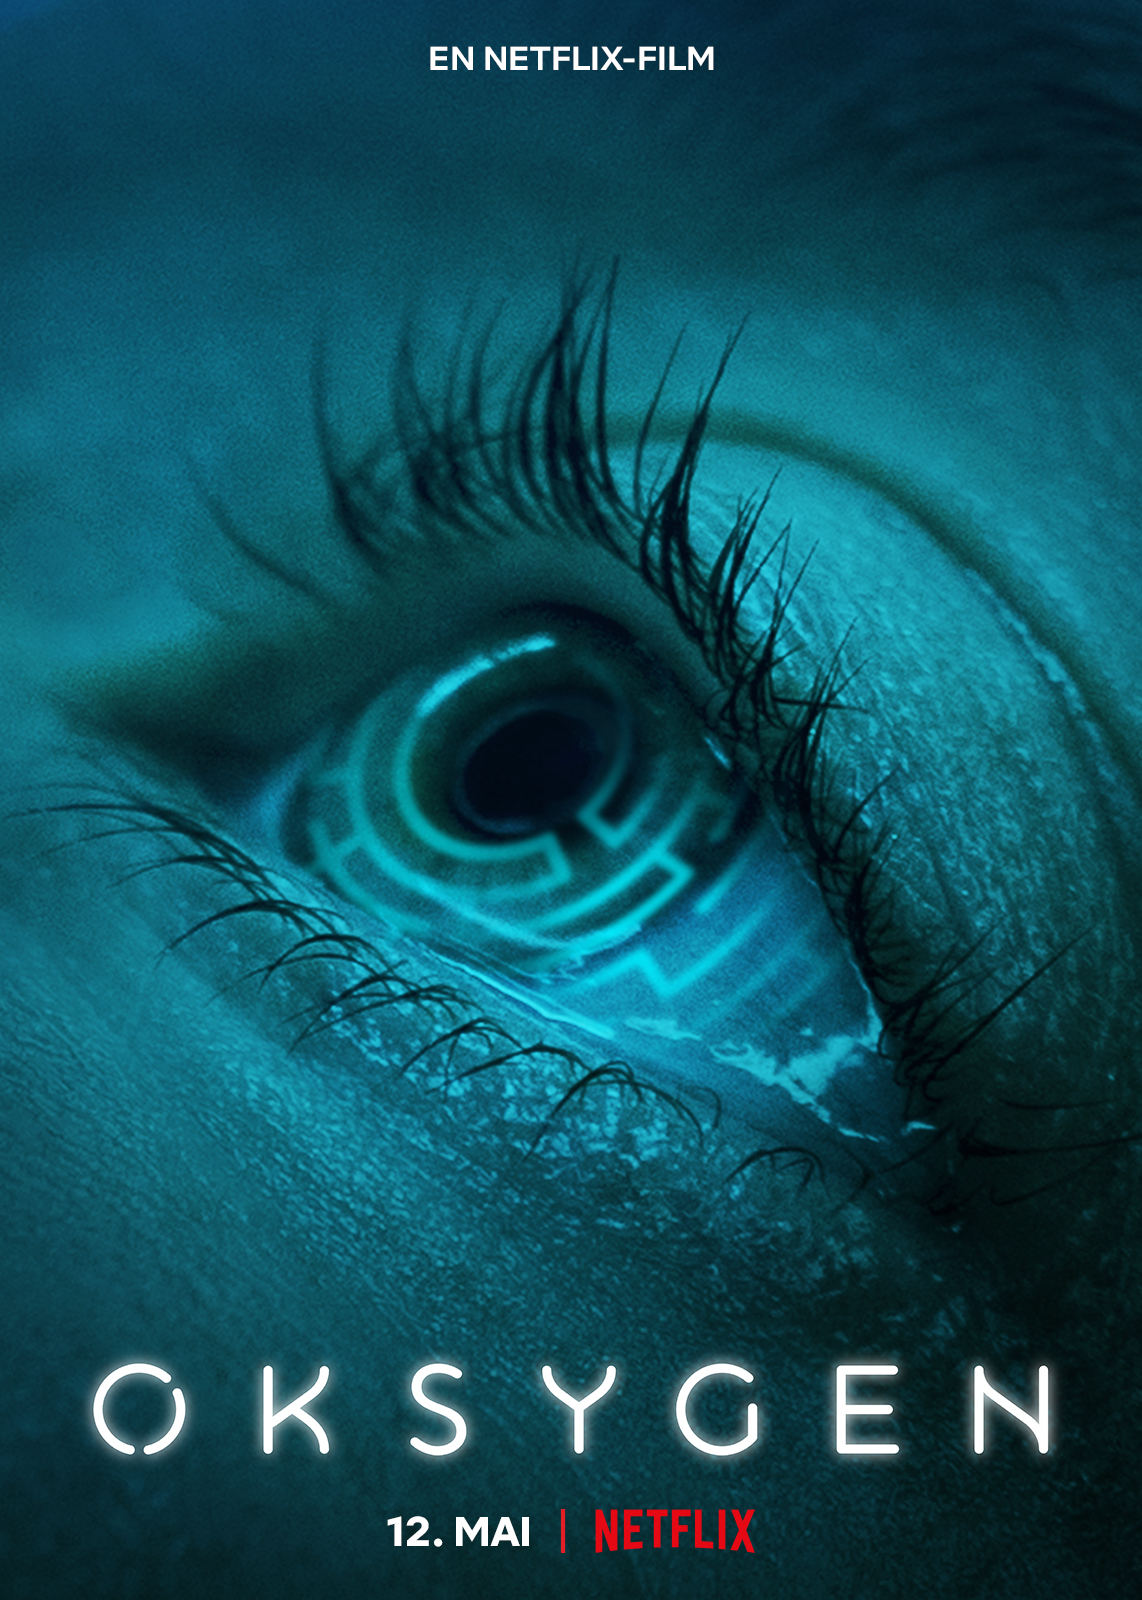 Auf dem Plakat von Oxygen (neu auf Netflix im Mai 2021) ist ein offenes Auge zu sehen, das nach oben blickt. Im Augapfel spiegelt sich ein kreisförmiges Labyrinth.